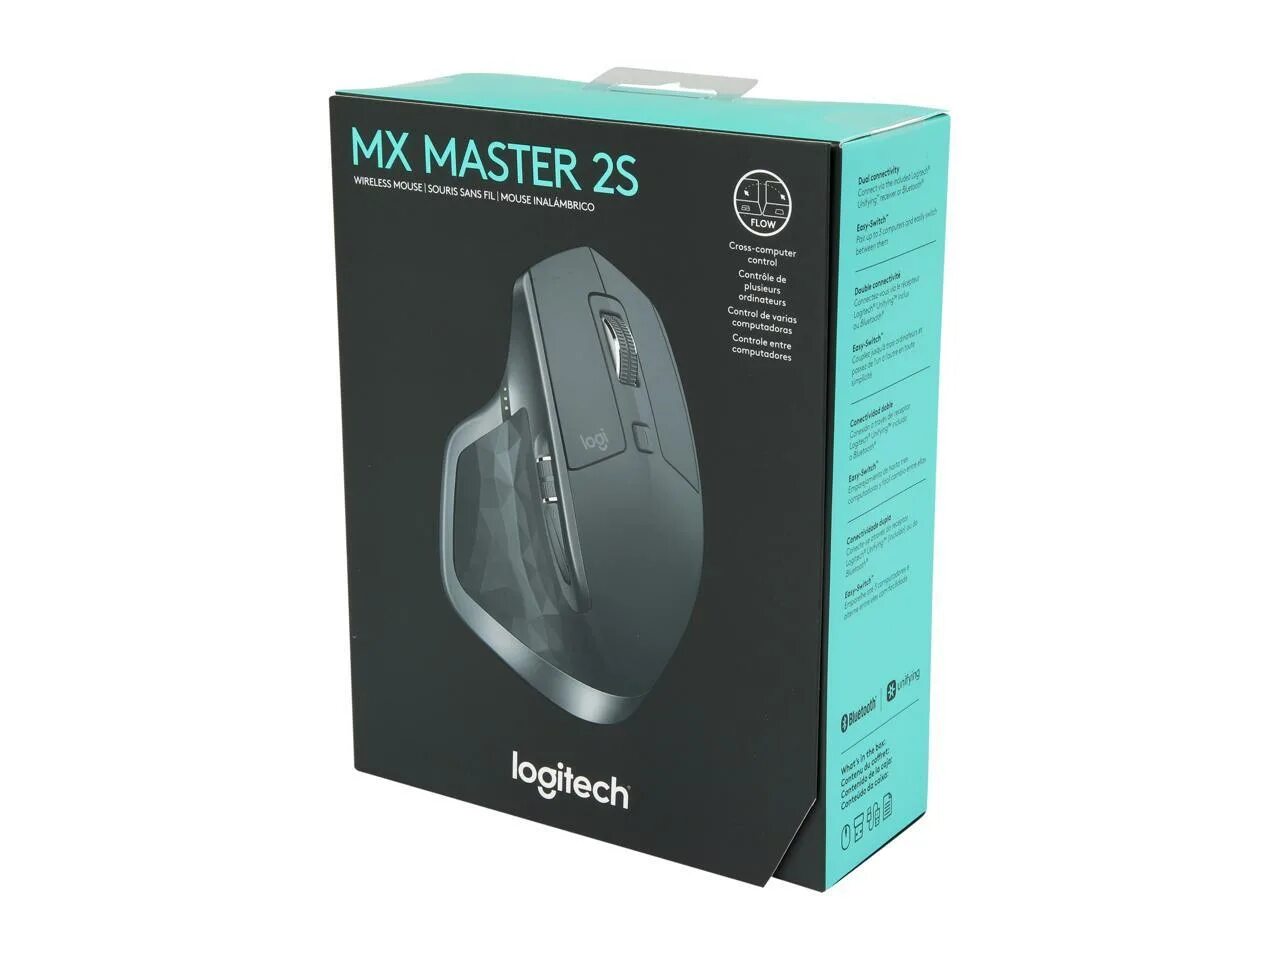 Logitech MX Master 2s. Logitech MS Master 2s. Logitech MX Master 2. Logitech MX Master 3 коробка. Logitech master купить